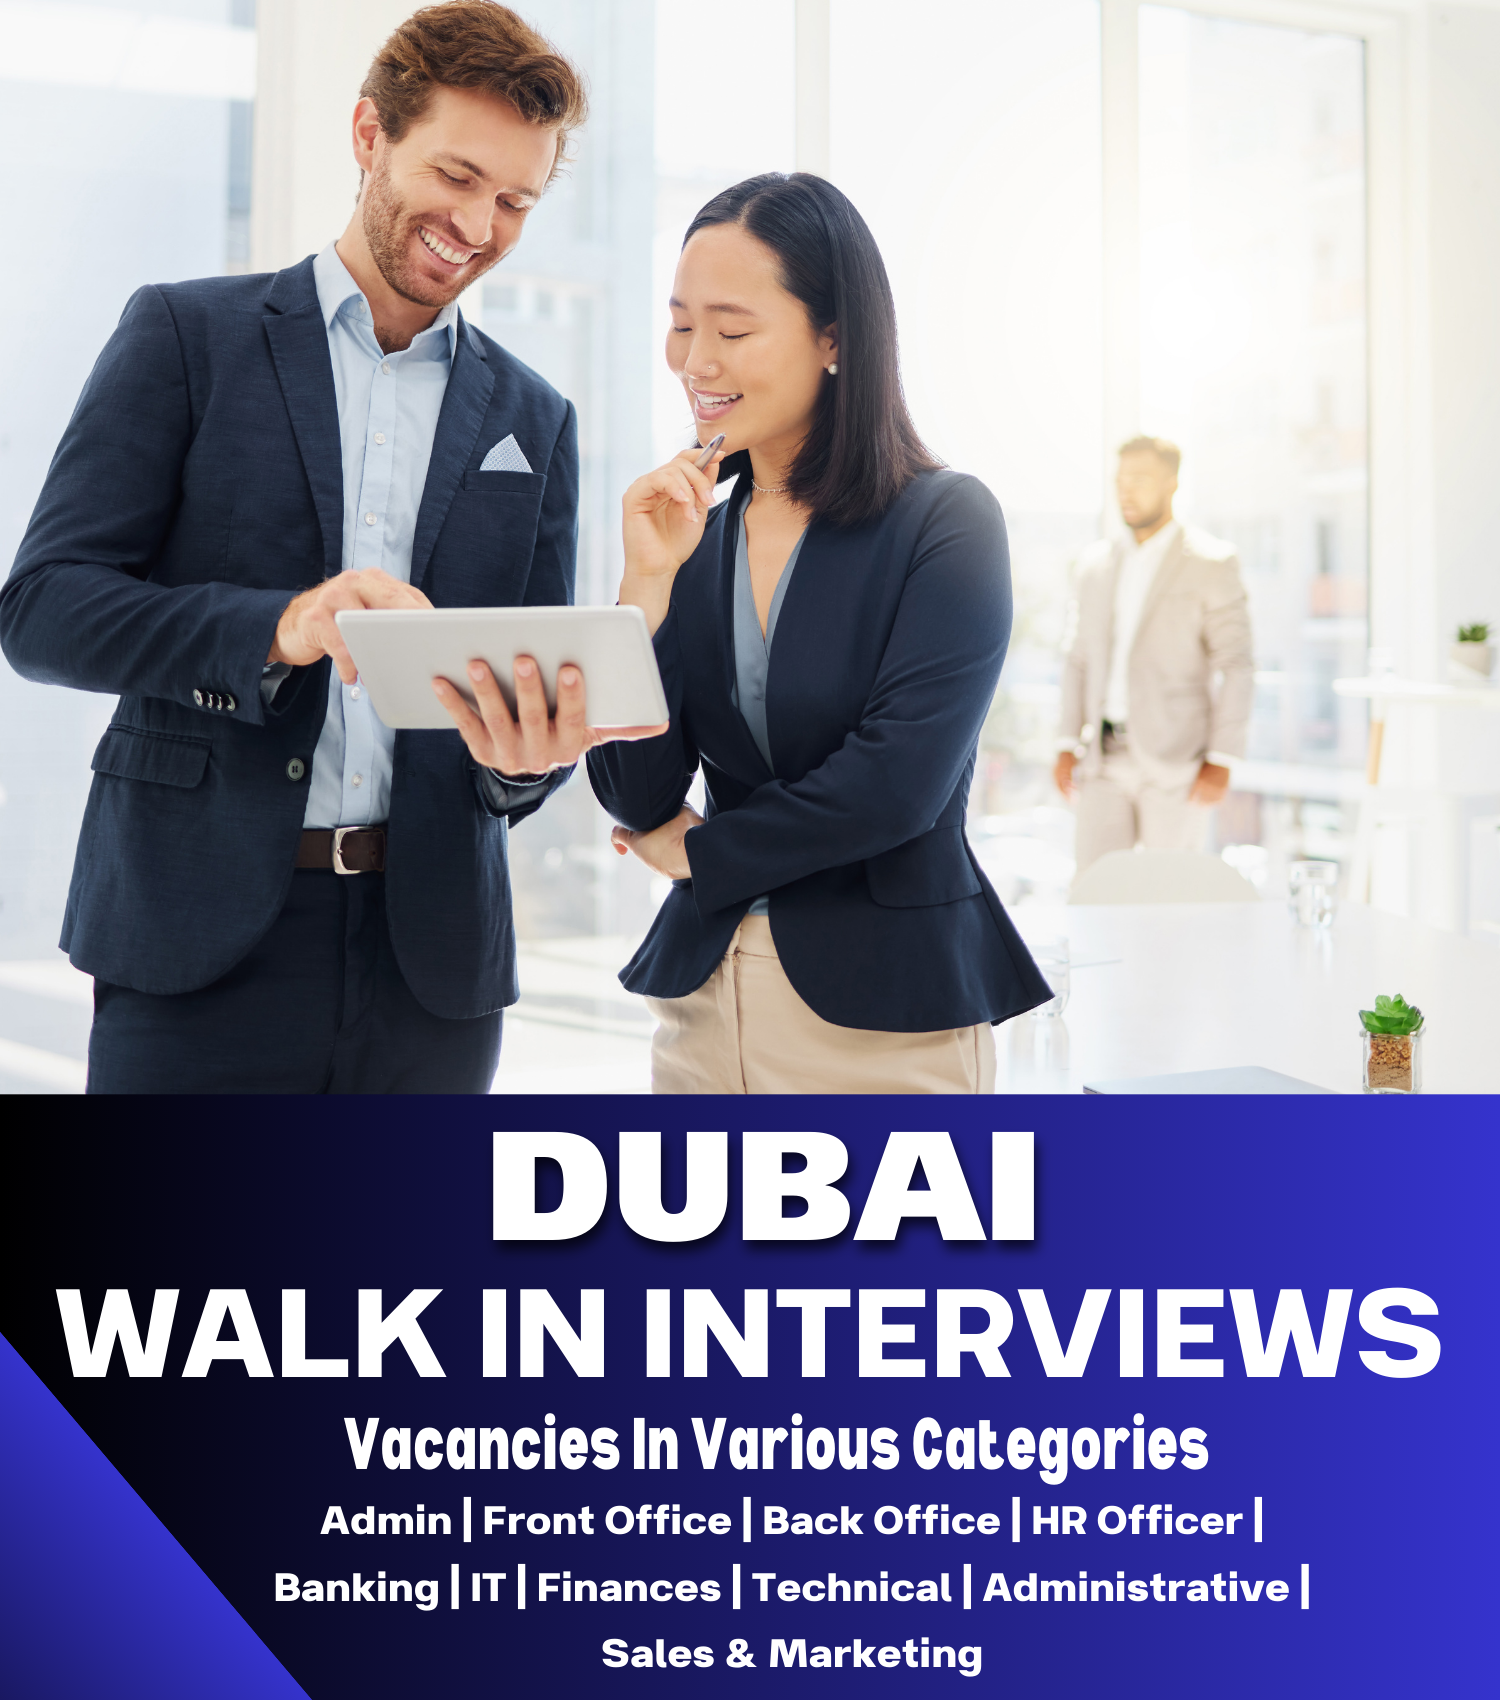 Walk in Interview Jobs in Dubai, Walk In Interviews, Walk In Interviews In Dubai, Walk In Interviews In UAE, Walk In Interview In Dubai